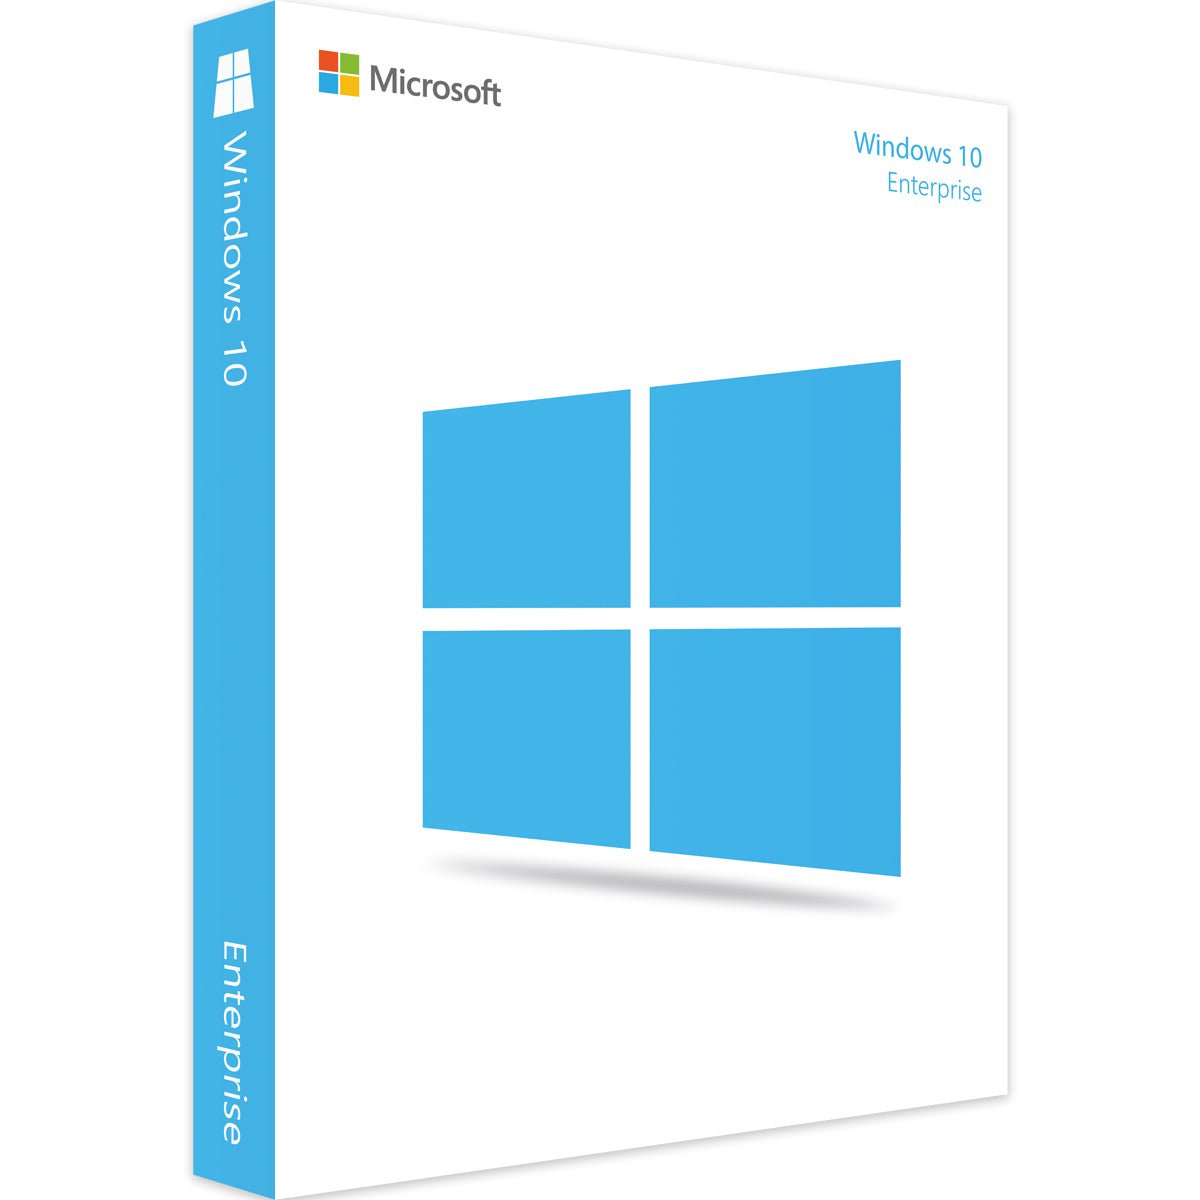 Windows 10 Enterprise - officepakke.dkWindows 10 Enterpriseofficepakke.dkofficepakke.dk